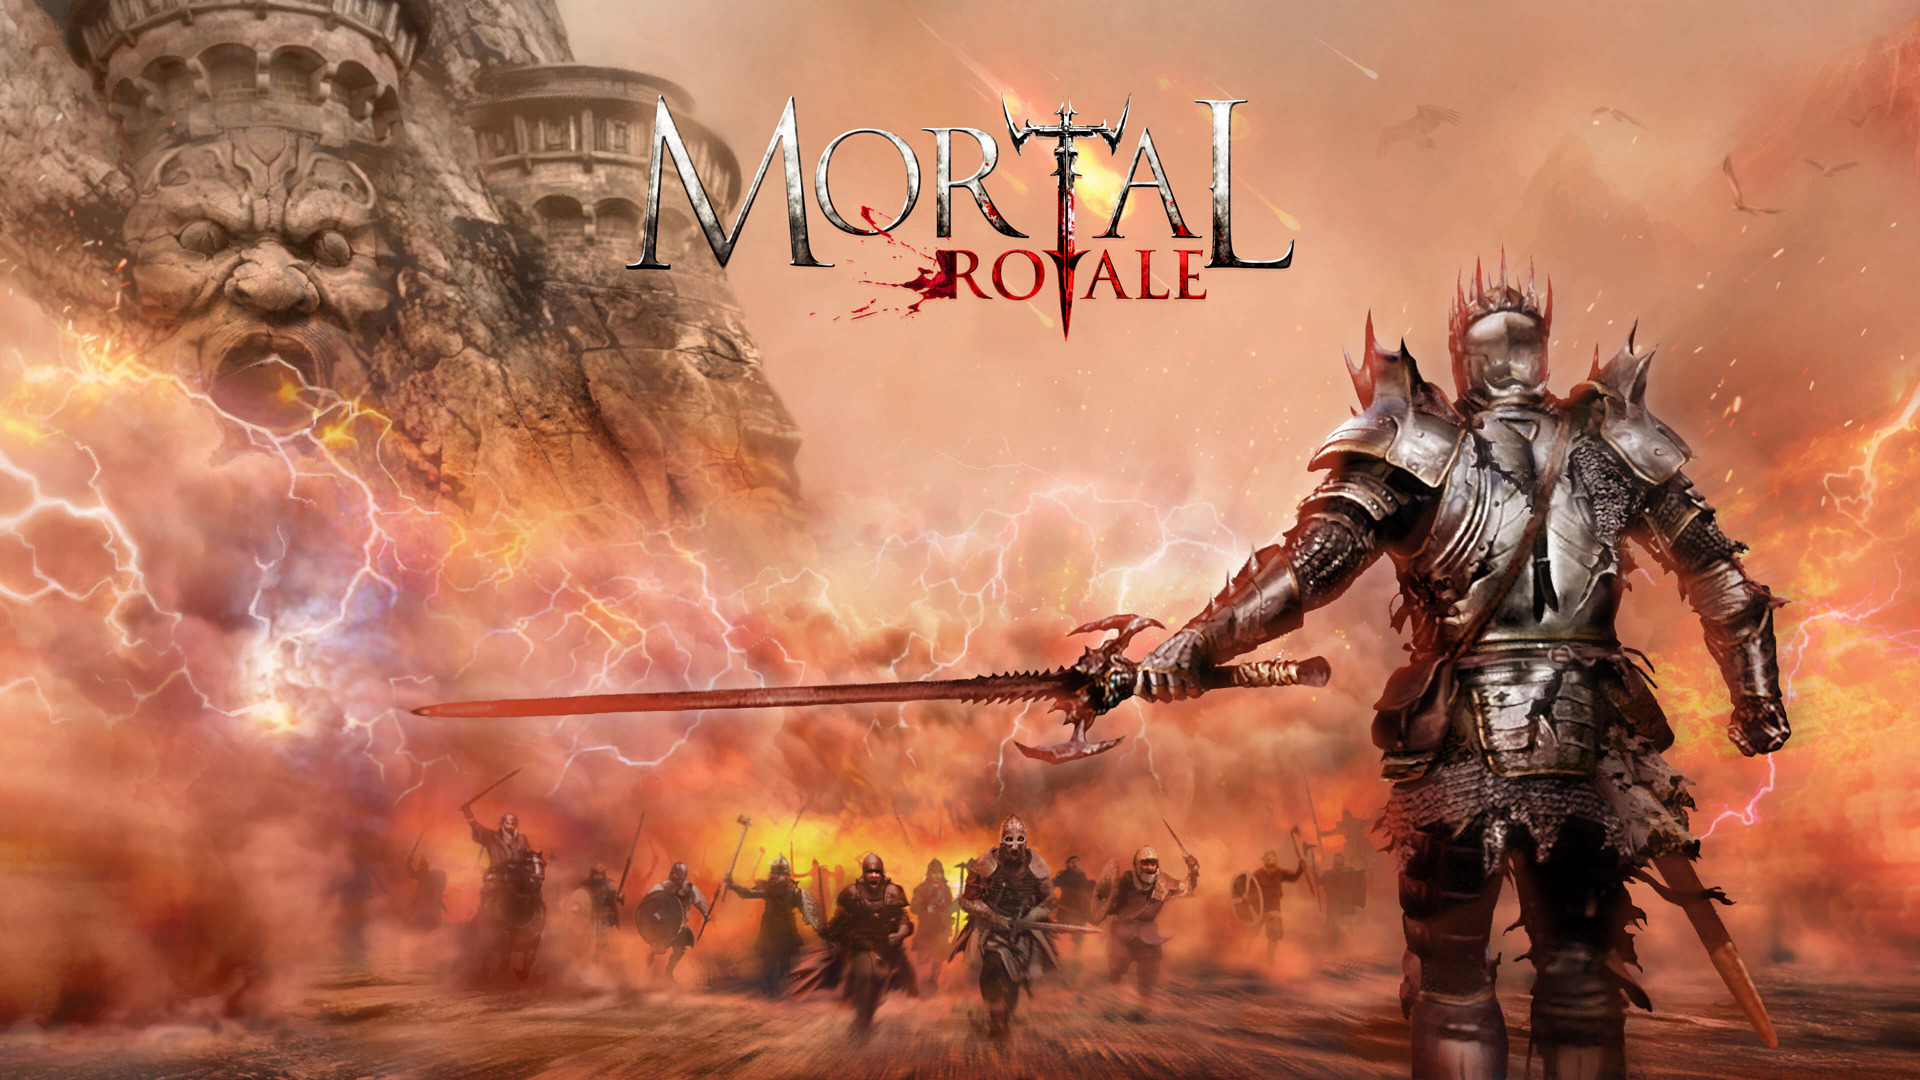 1 000人ファンタジーバトルロイヤル Mortal Royale 発表 Mortal Online 開発元新作 Game Spark 国内 海外ゲーム情報サイト